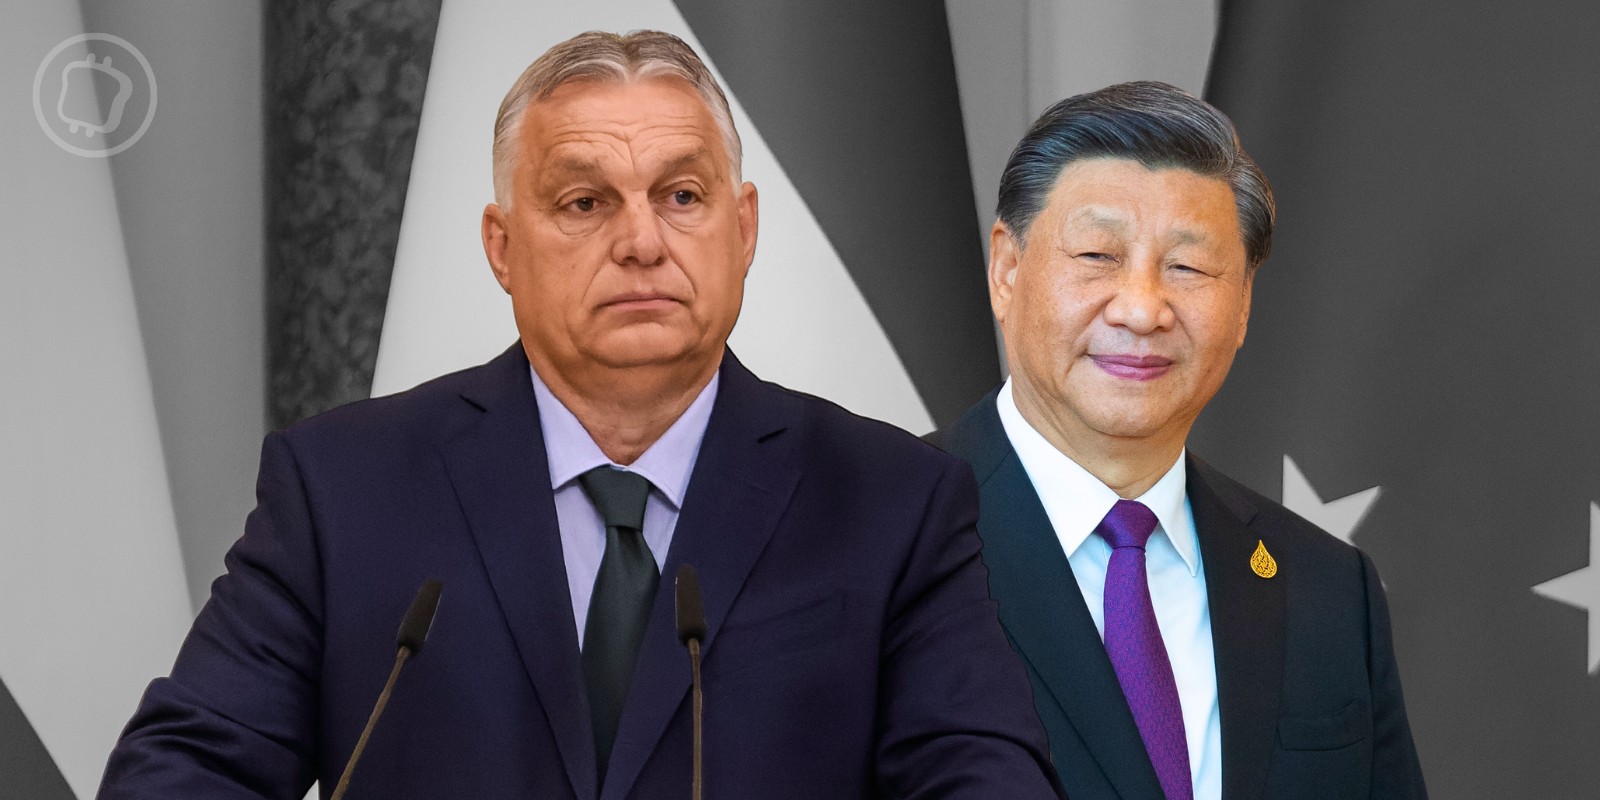 La Hongrie a discrètement emprunté 1 milliard d'euros à la Chine